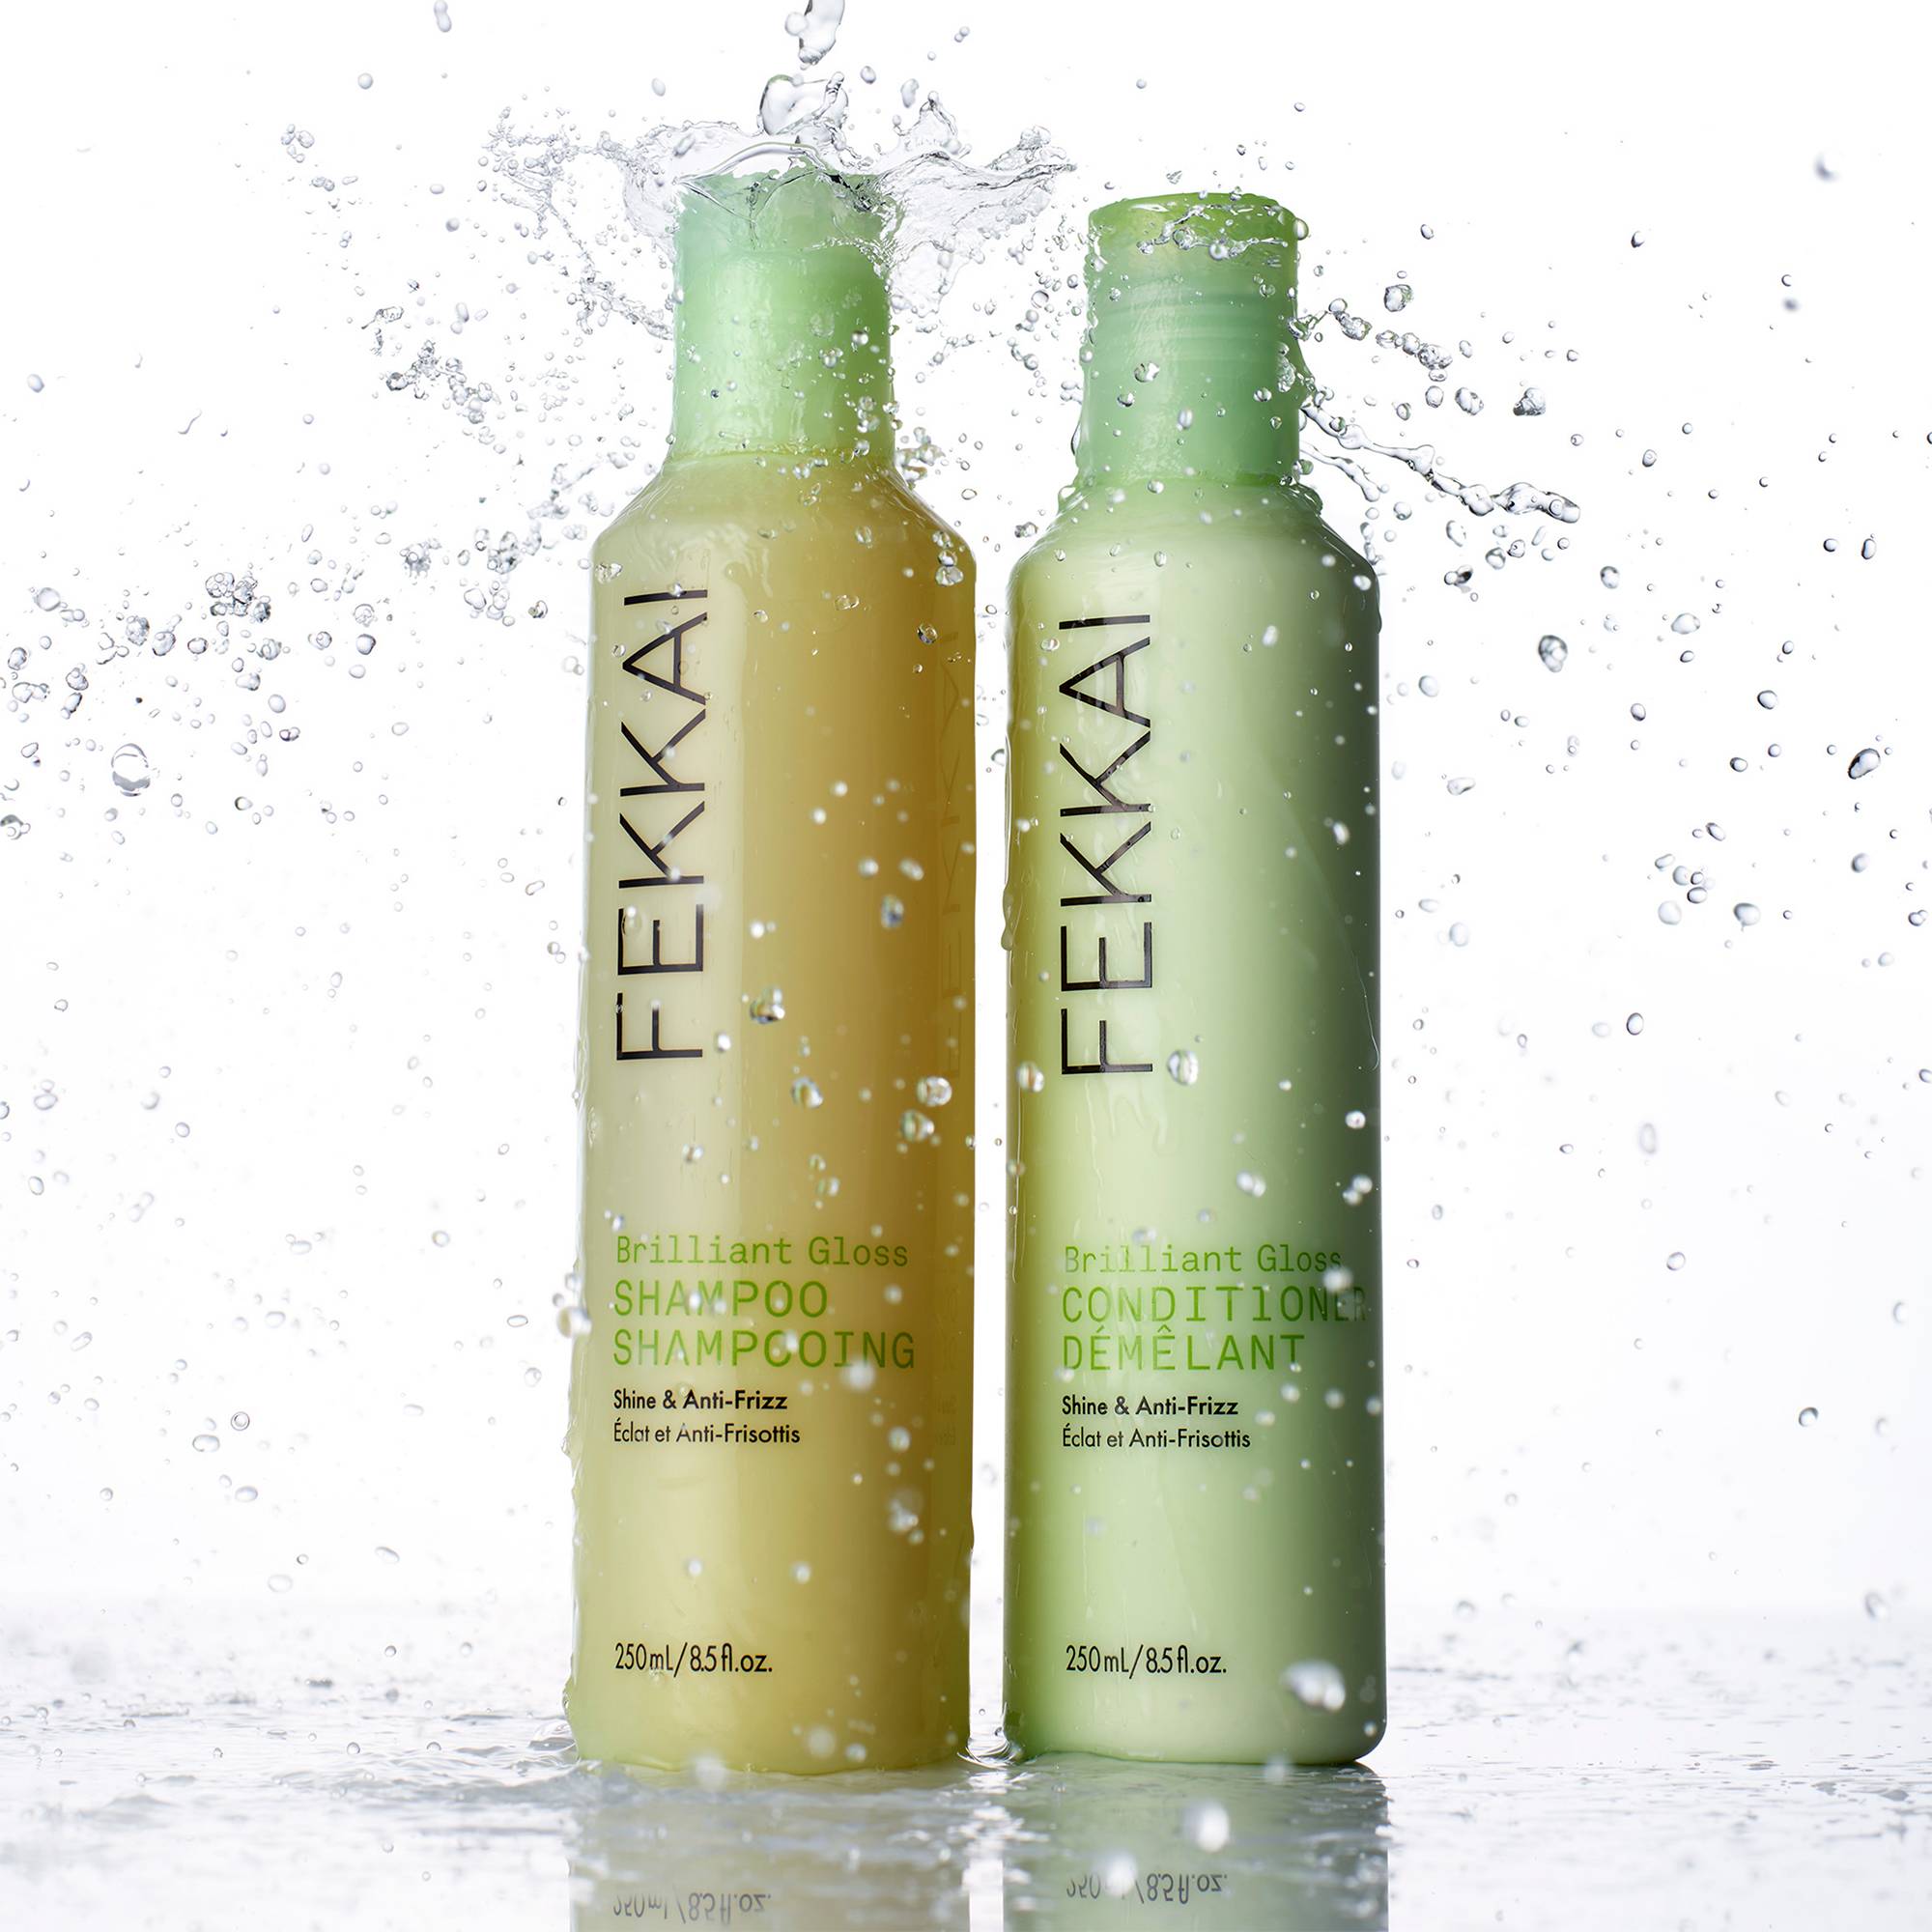 Après-shampoing brillance et anti-frisottis Brilliant Gloss de la marque Fekkai Contenance 250ml - 3